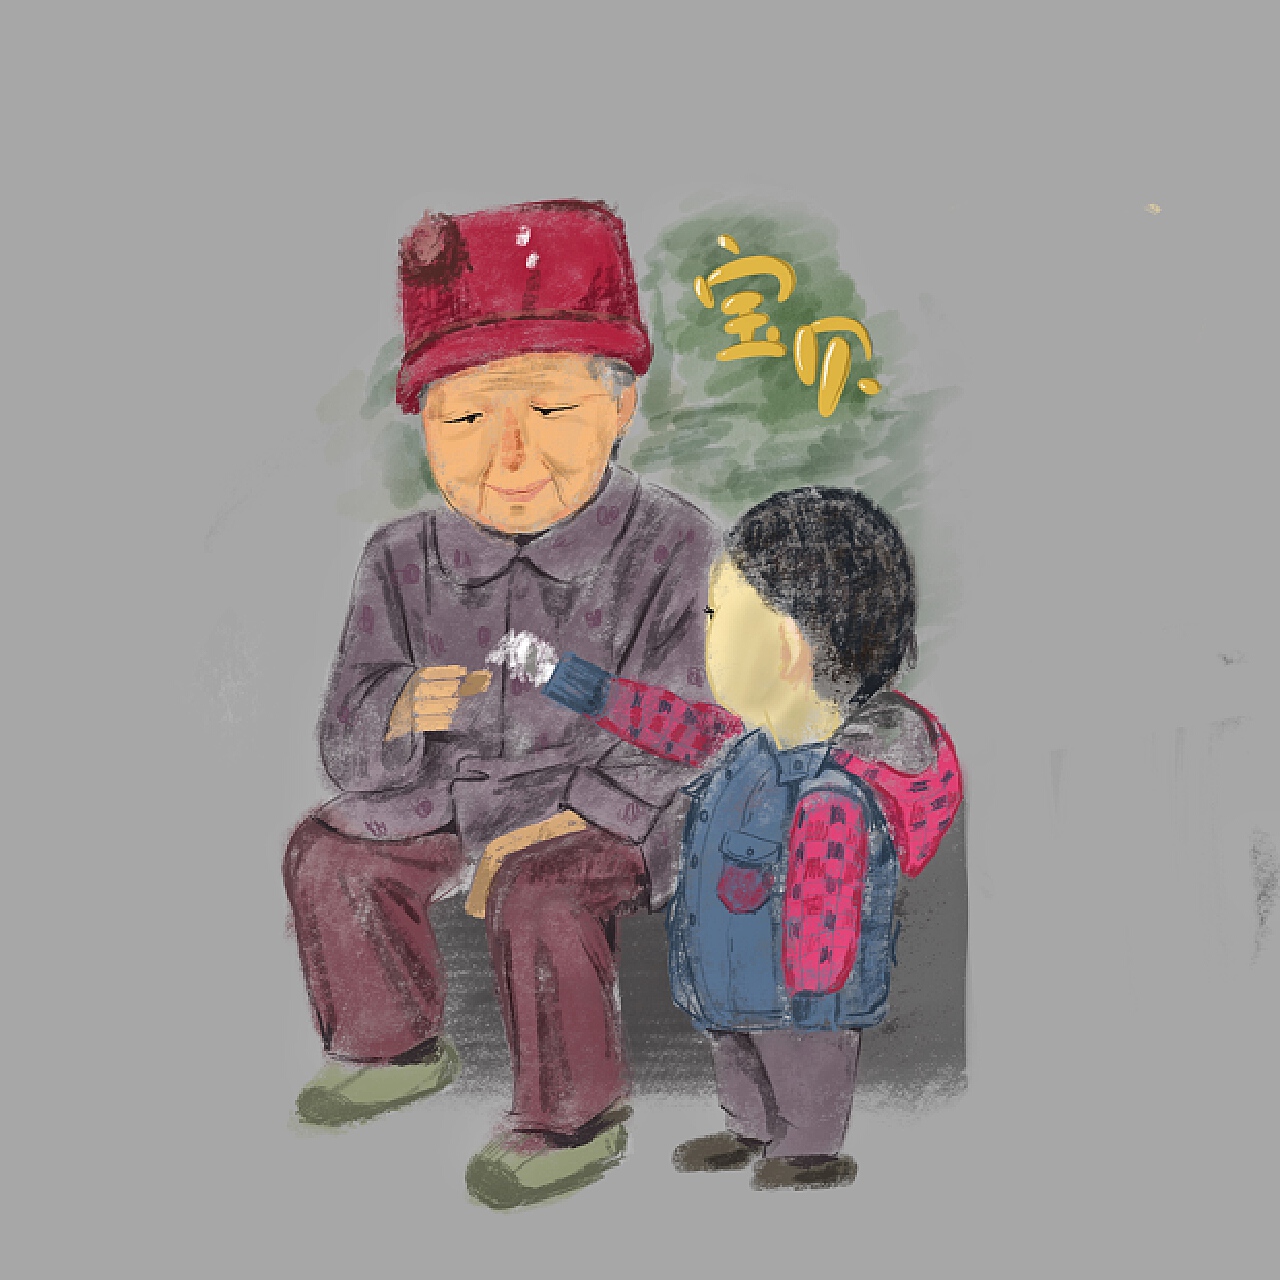 小女孩和爷爷奶奶一起玩耍-蓝牛仔影像-中国原创广告影像素材